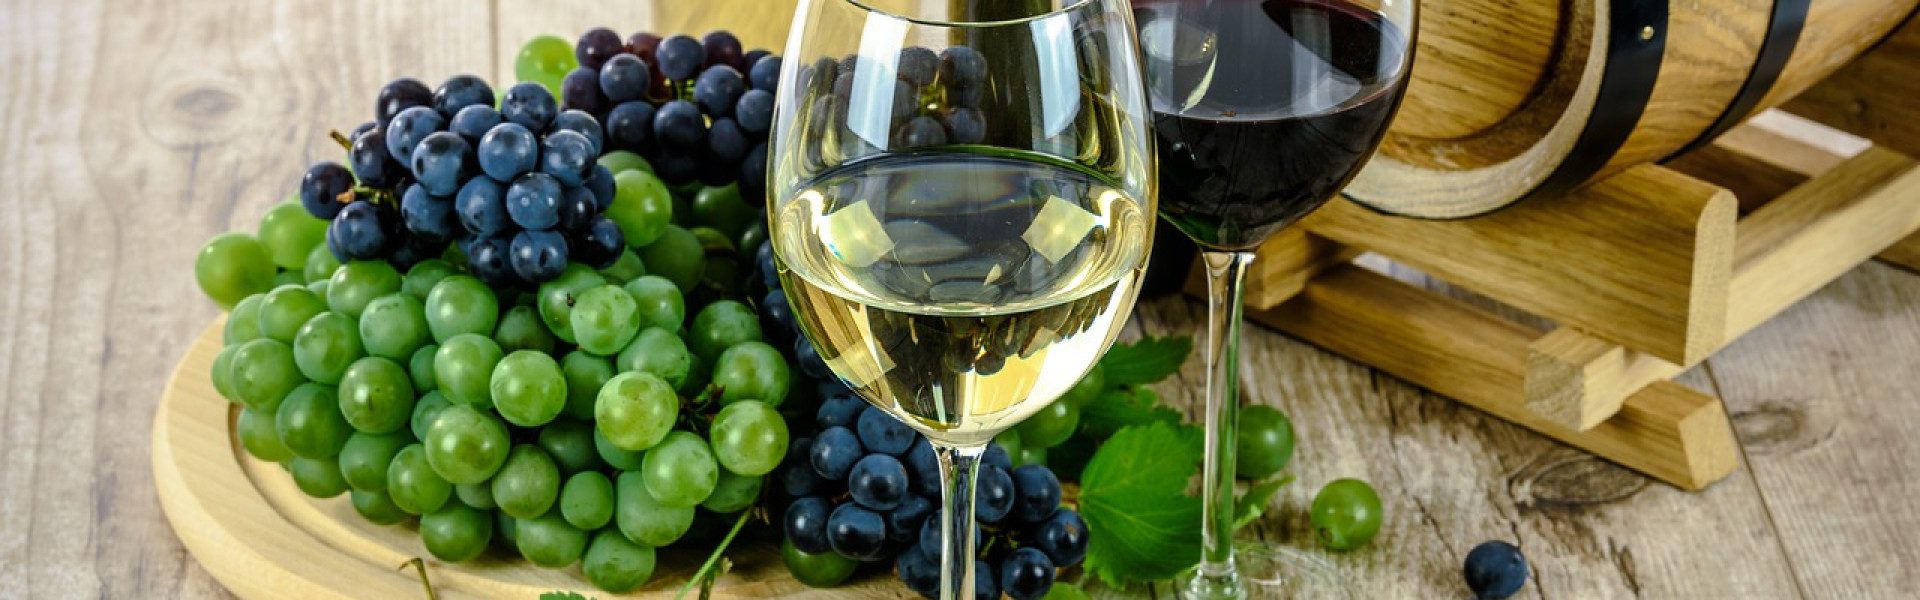 Achat de vins et spiritueux : pourquoi aller sur un site spécialisé ?